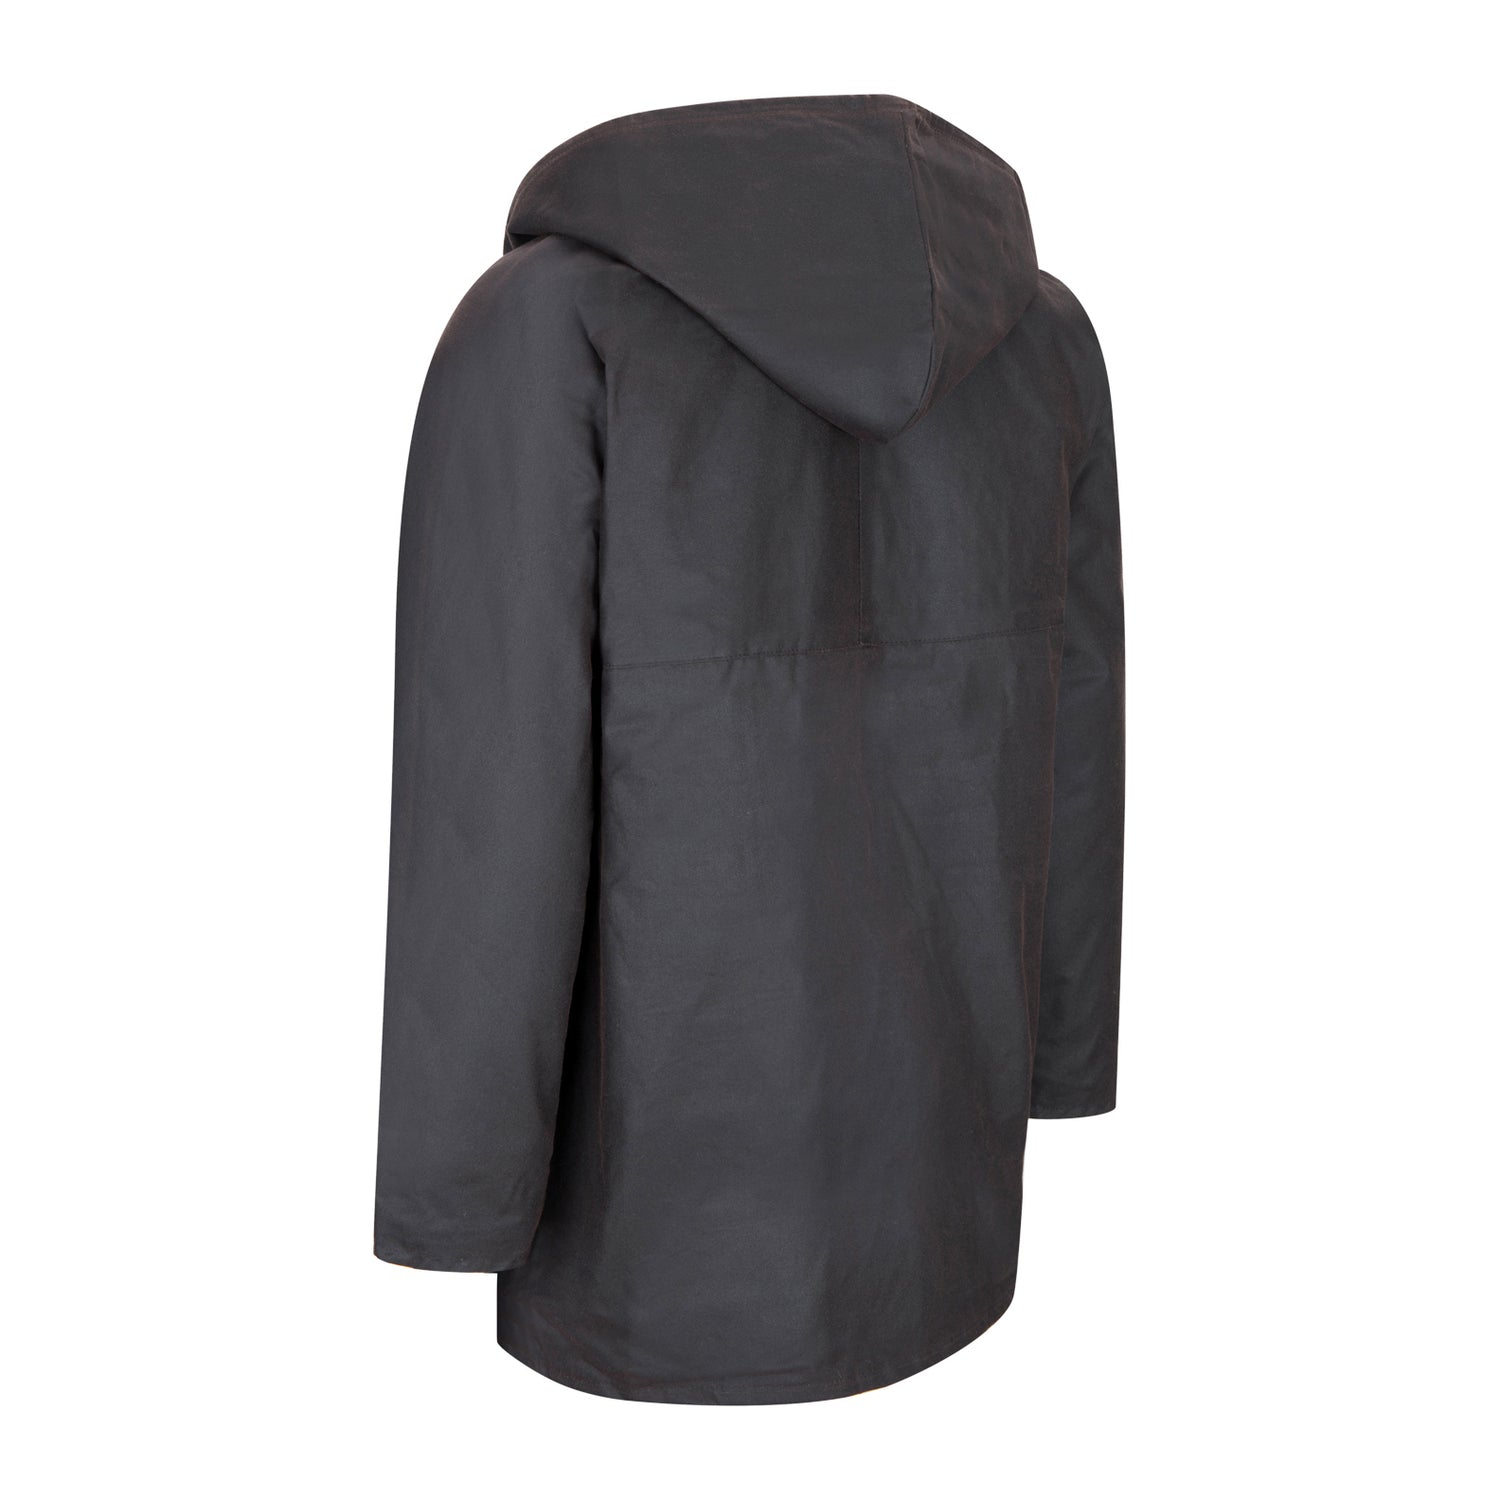 J Gallery Sleeping Bag Coat. Black Real Down Quilted Coat. -  Norway